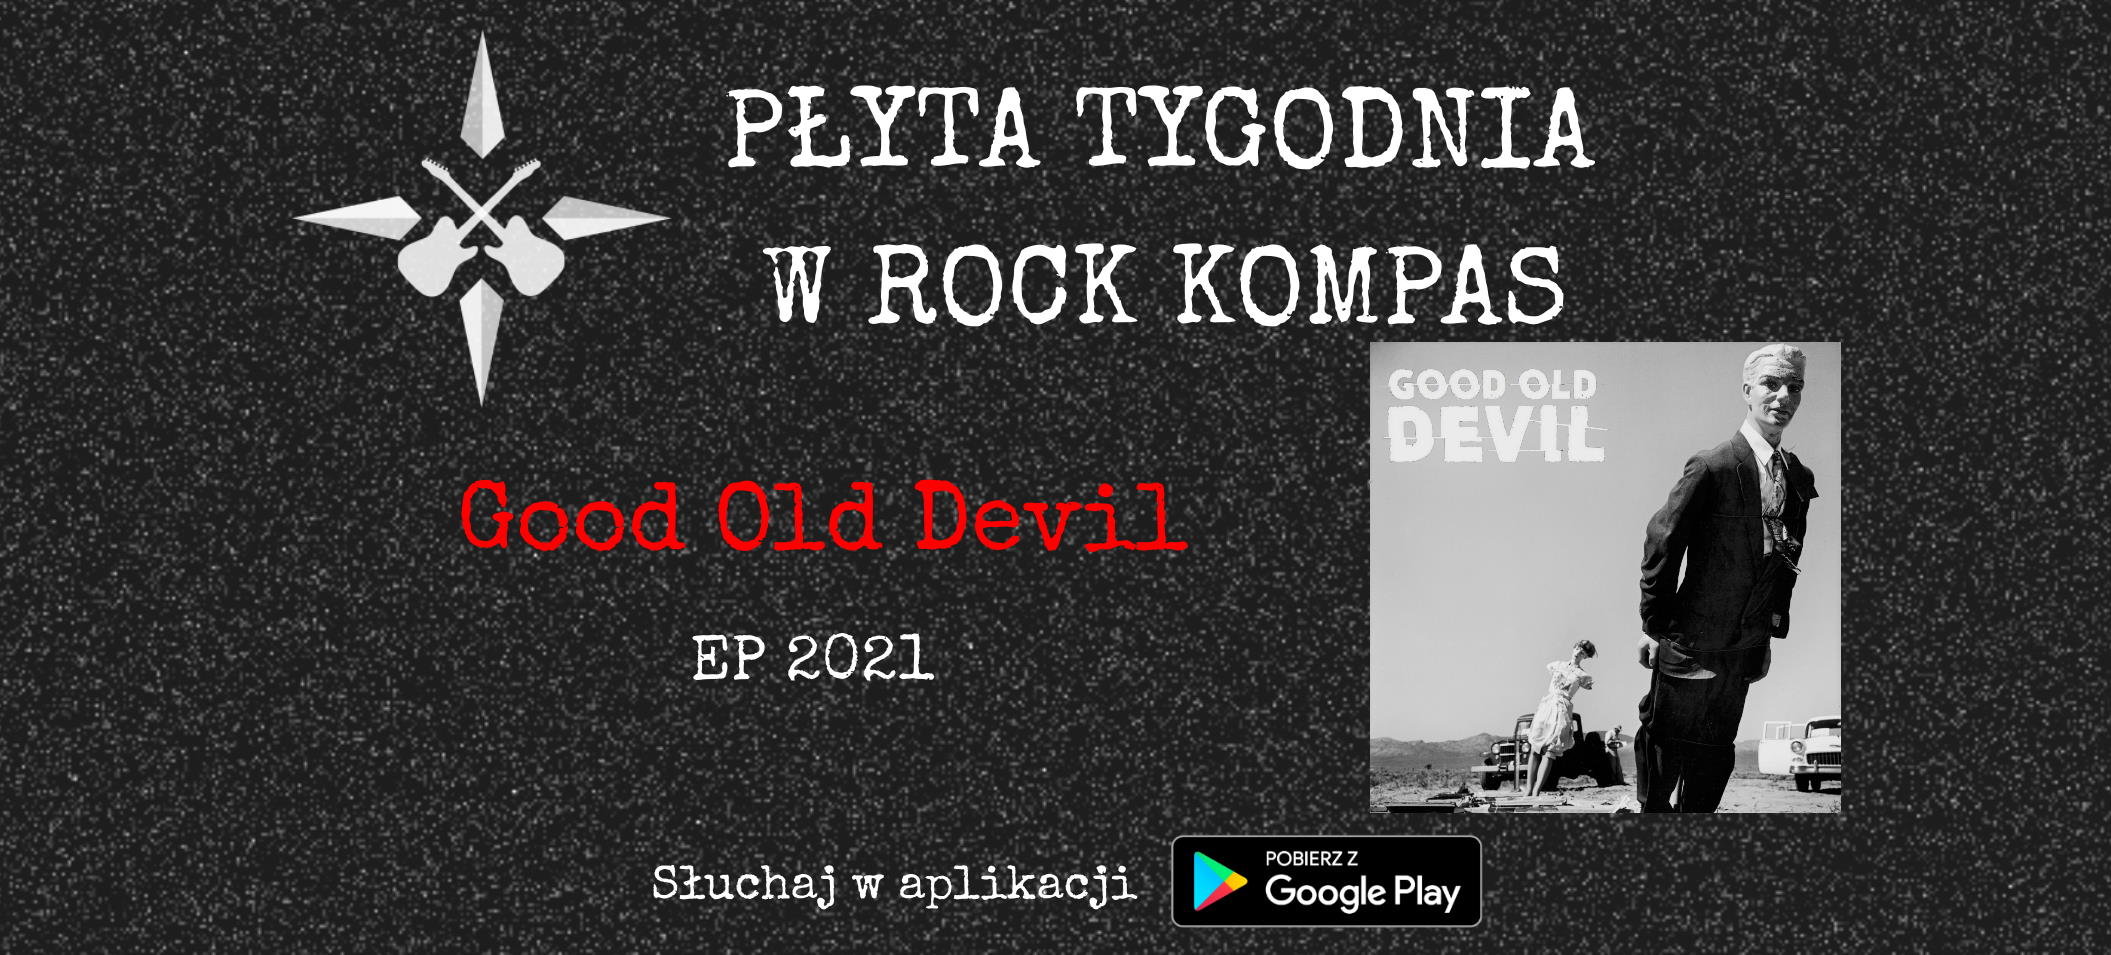 Płyta tygodnia w Rock Kompas: Good Old Devil - EP 2021